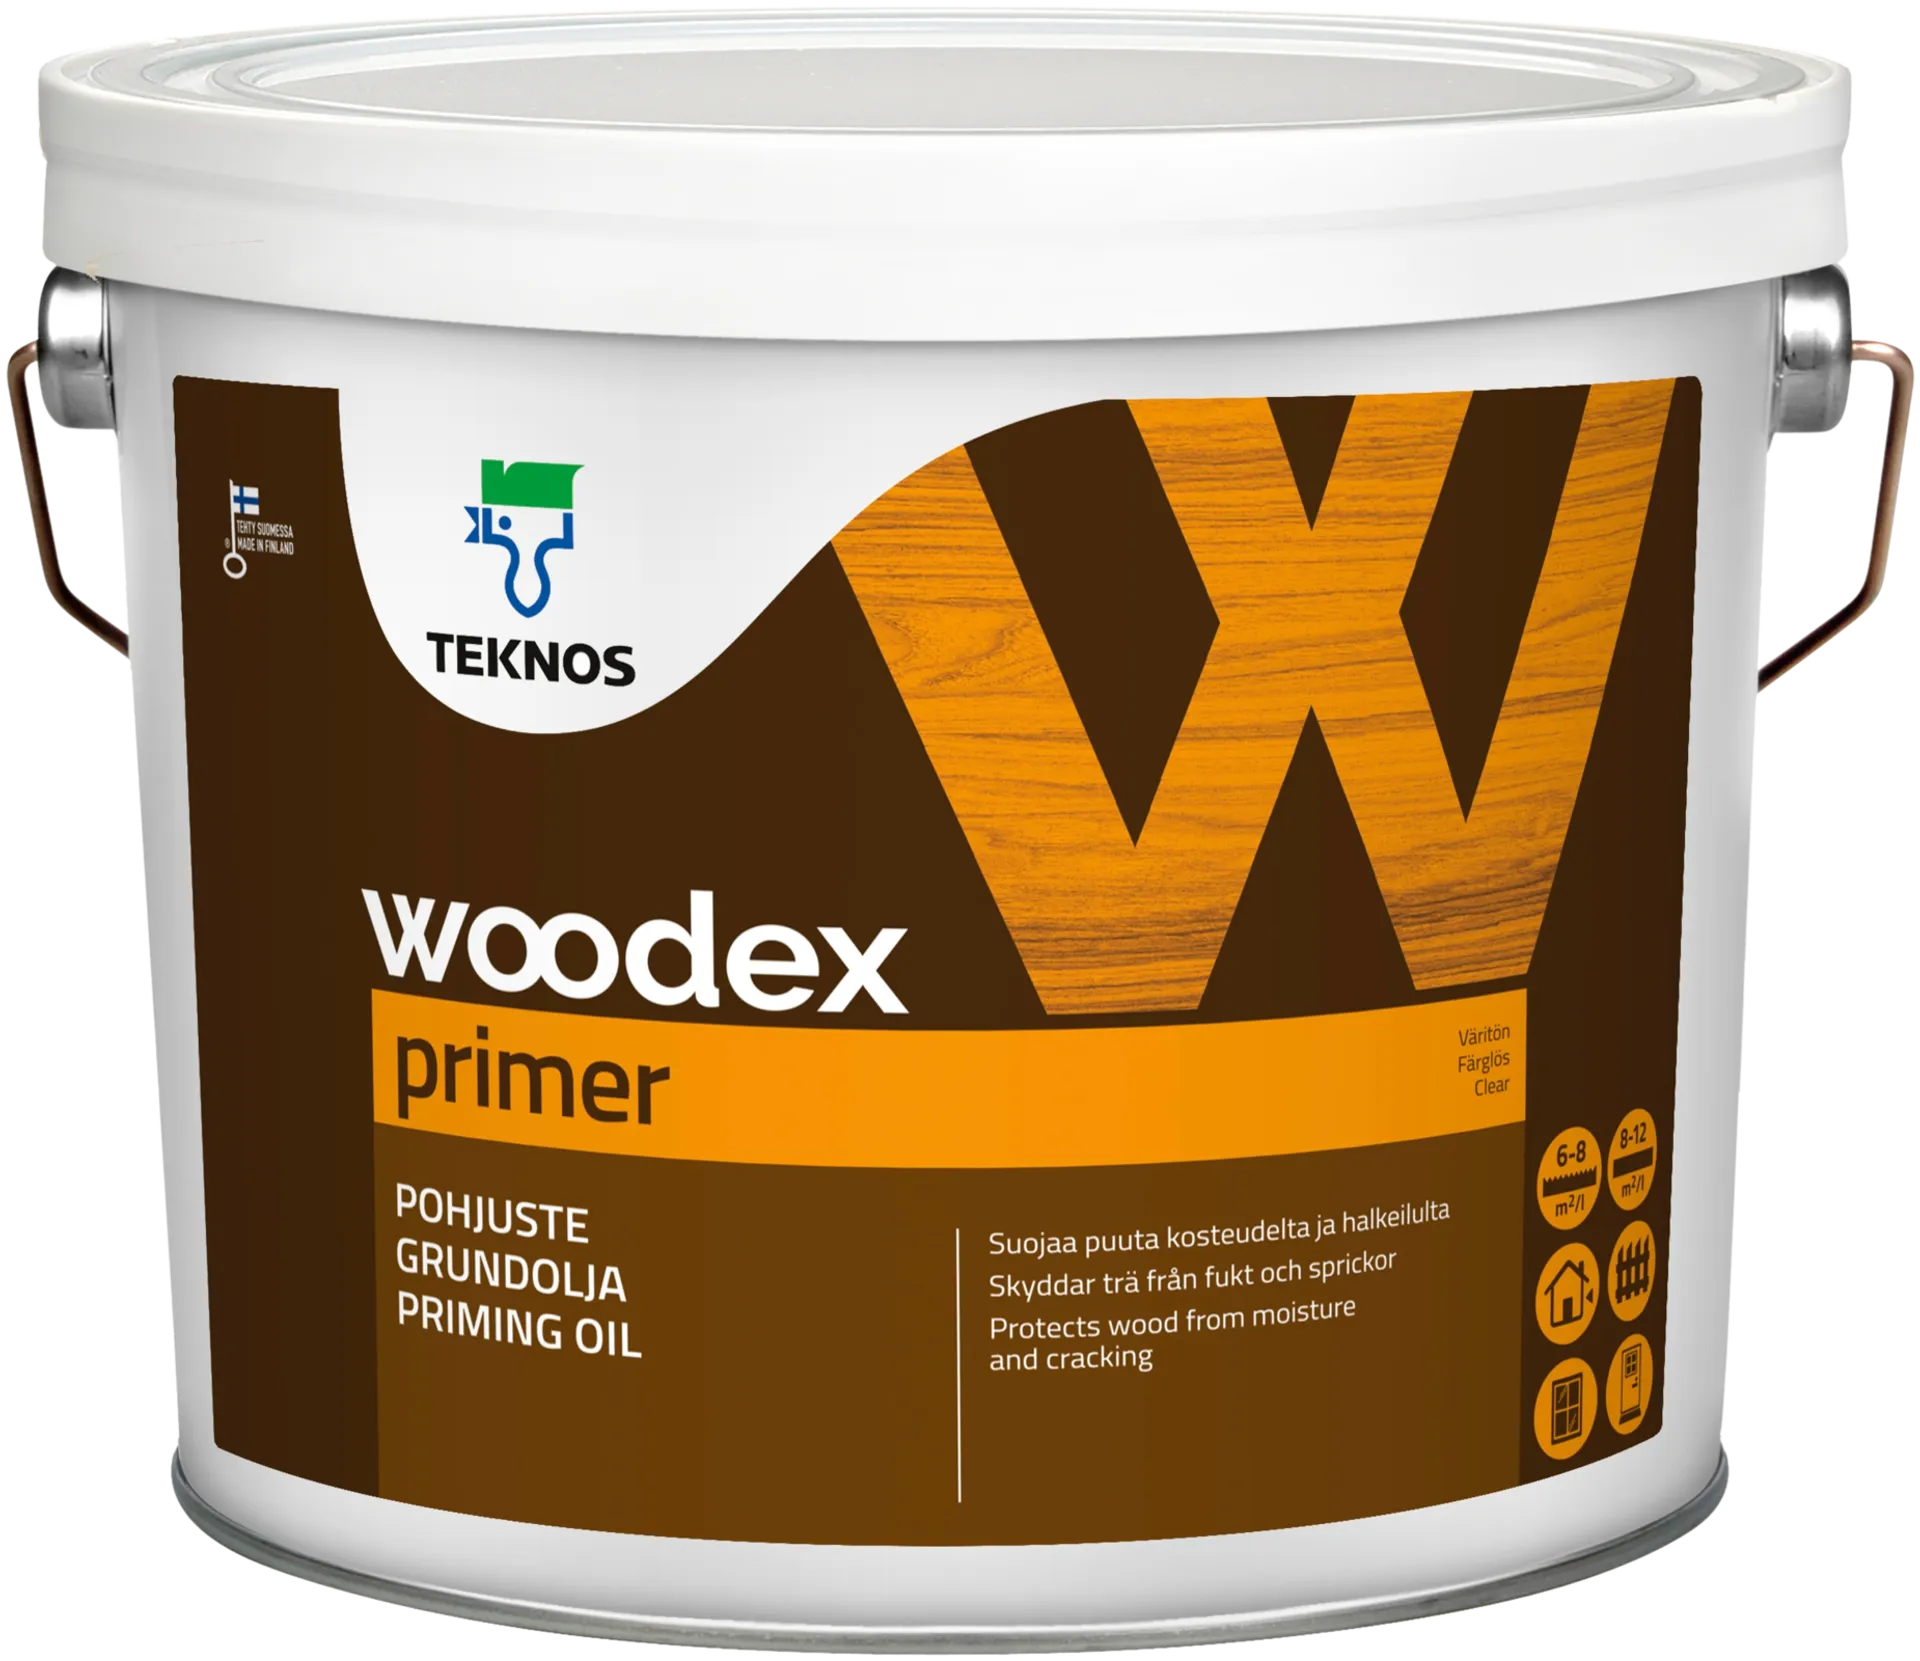 Teknos pohjuste Woodex Primer 3 l väritön